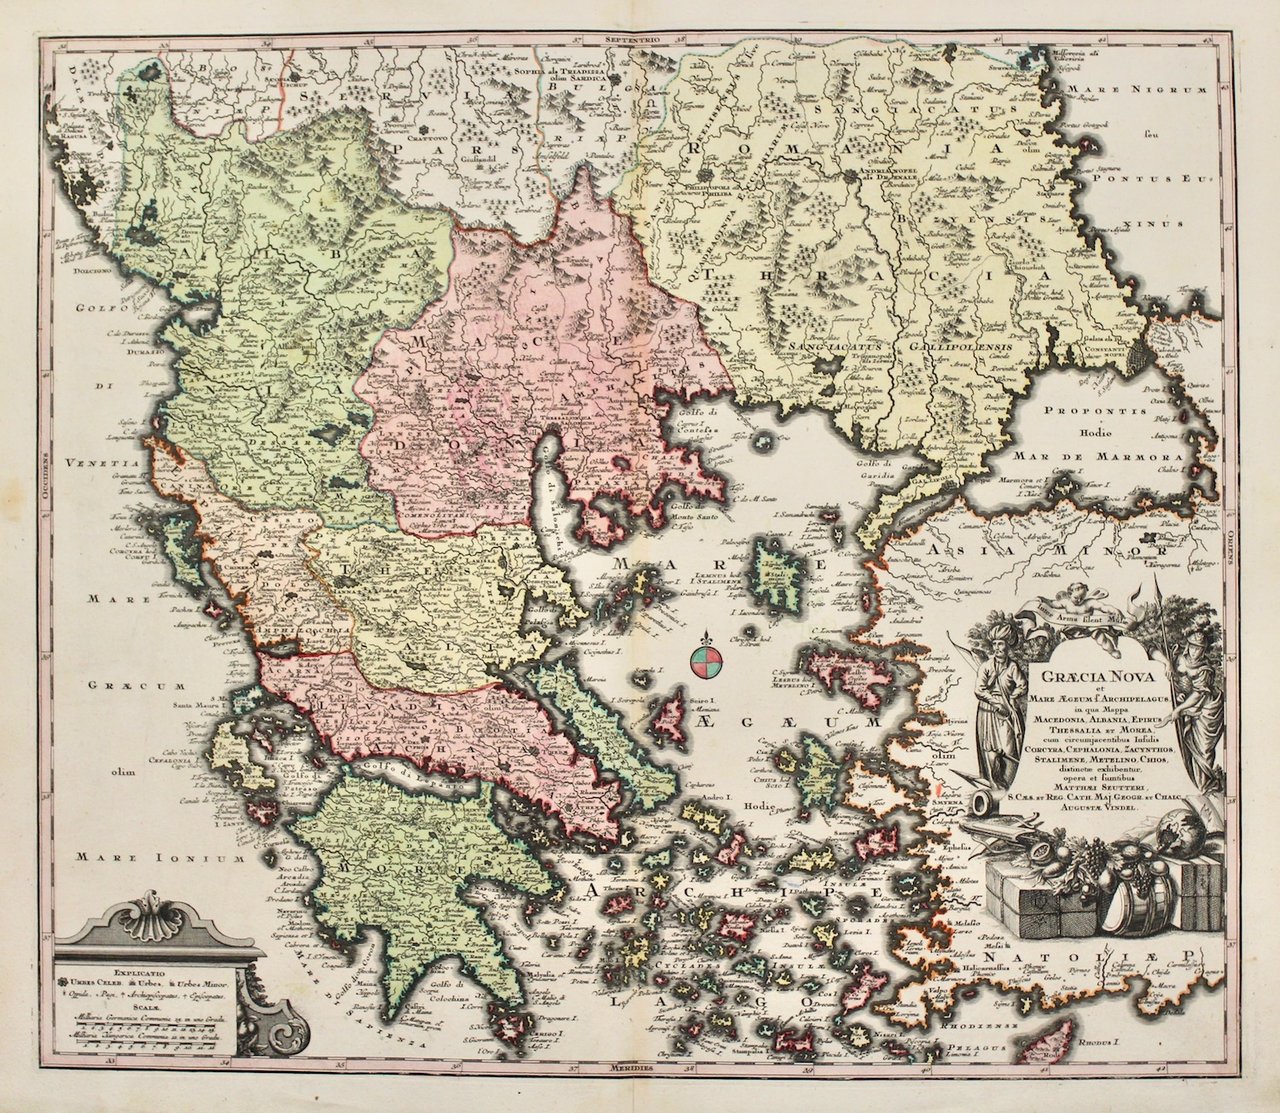 Graecia nova et mare Aegeum f. Archipelagus in qua mappa …